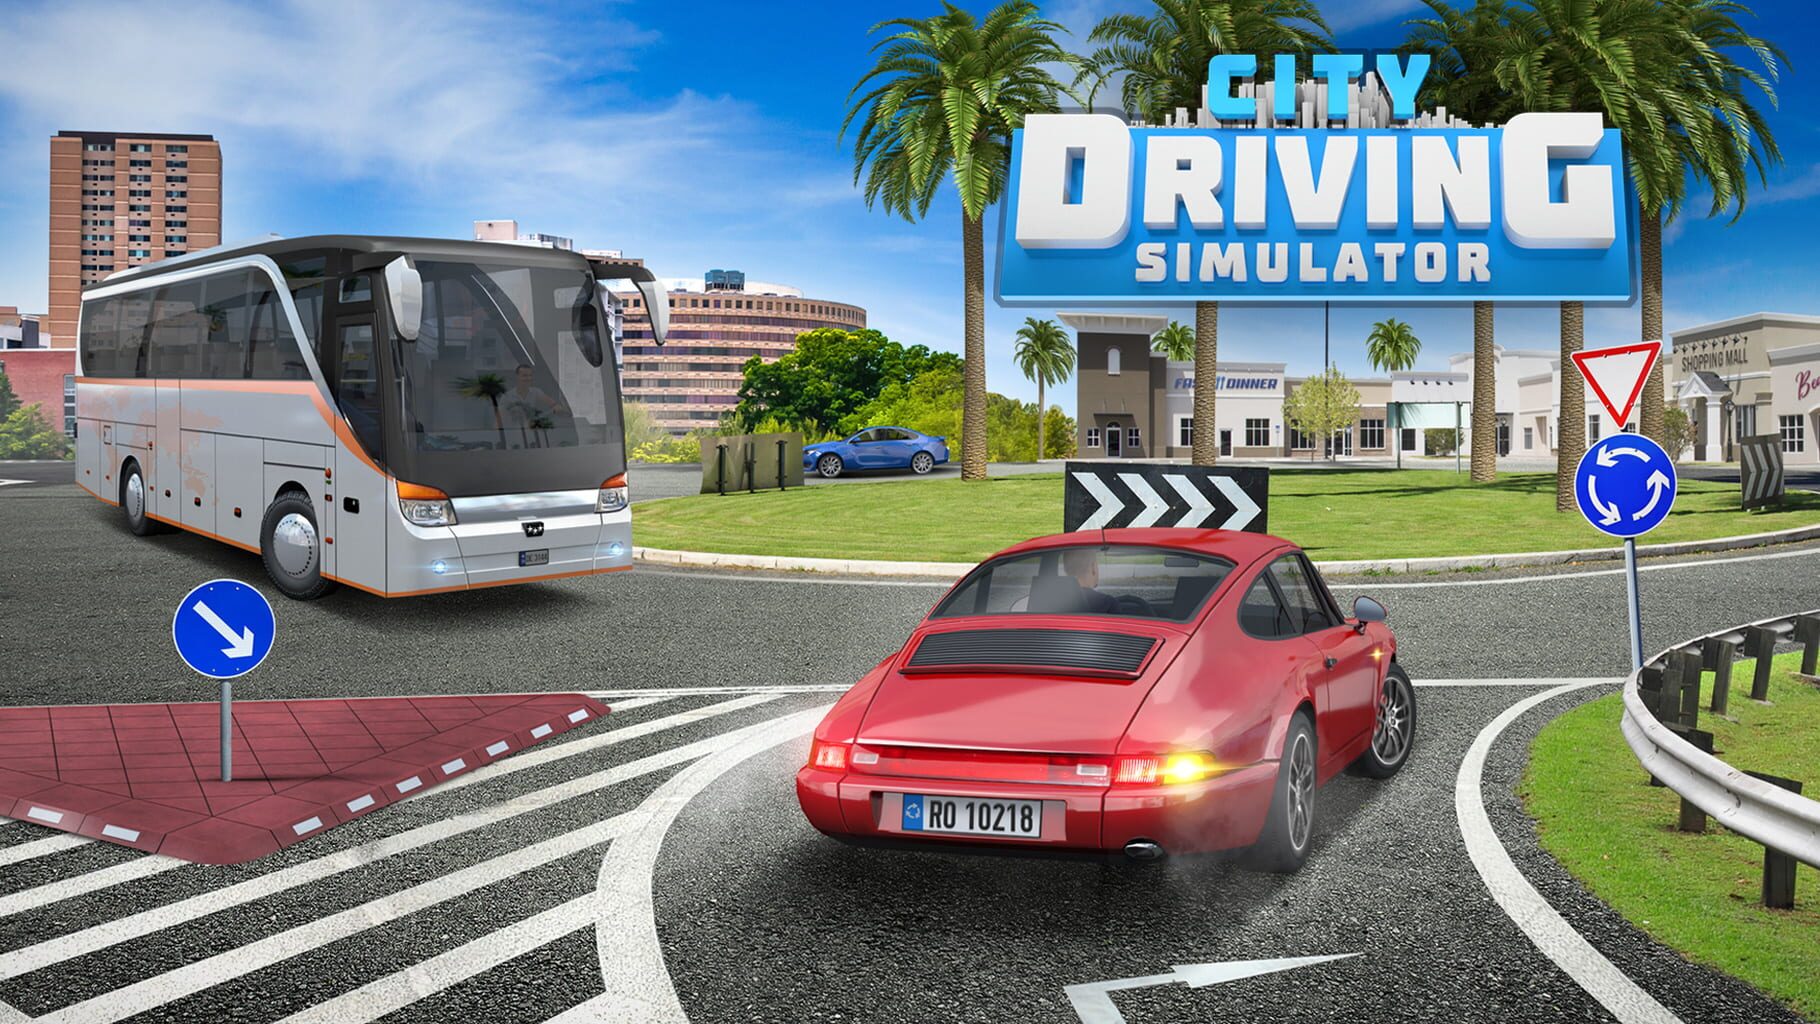 City Driving Simulator artwork